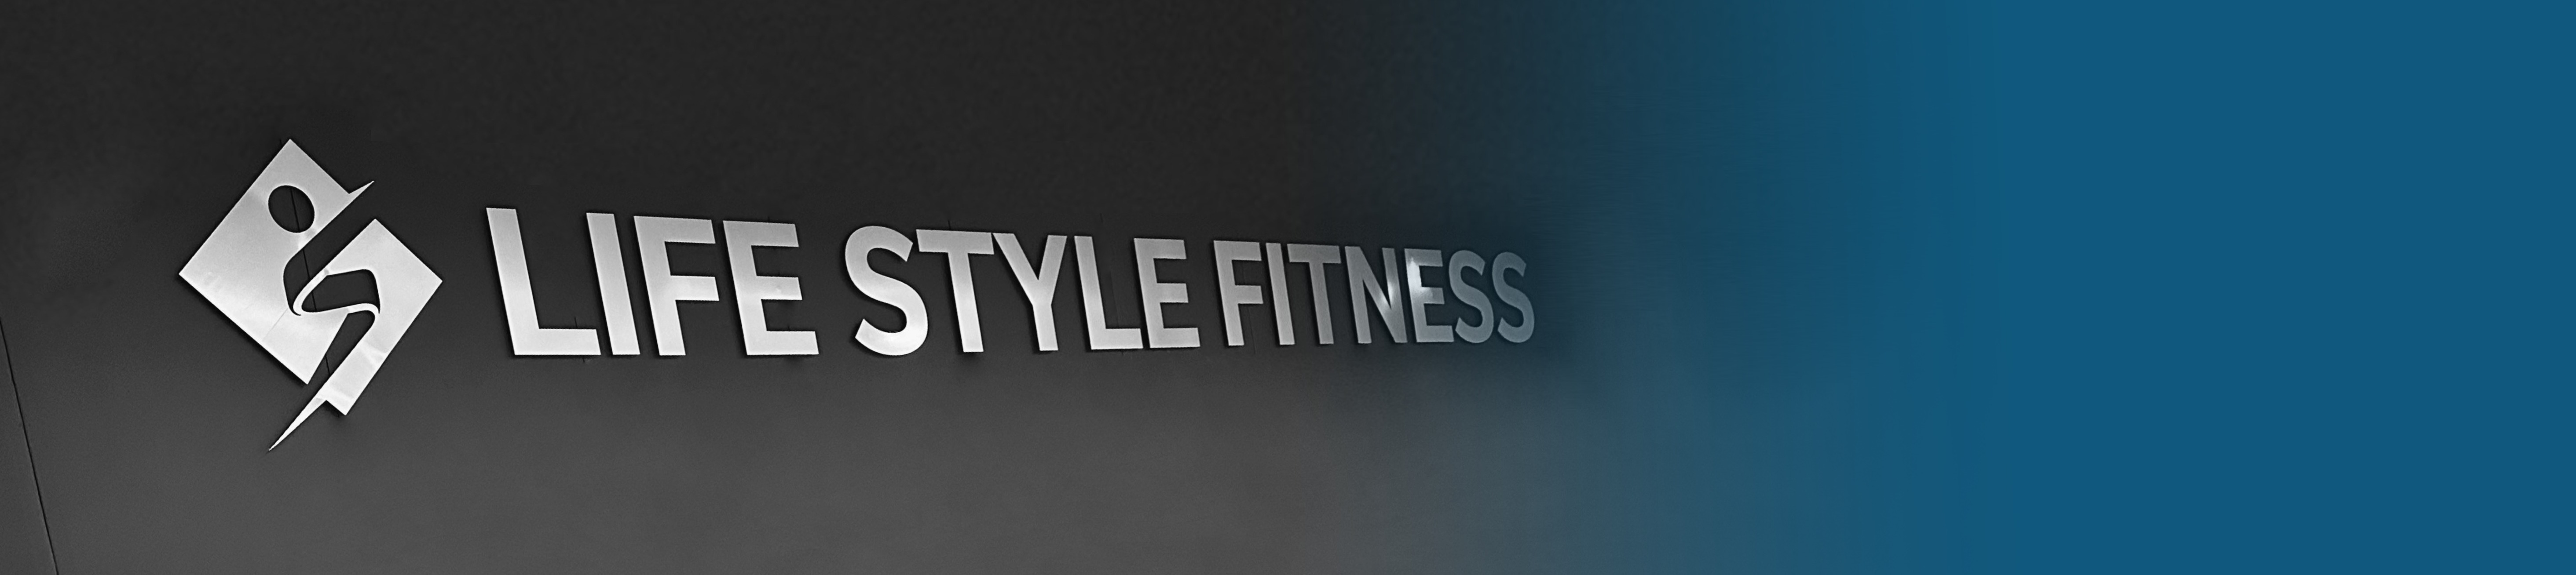 Maak kennis met Life Style Fitness